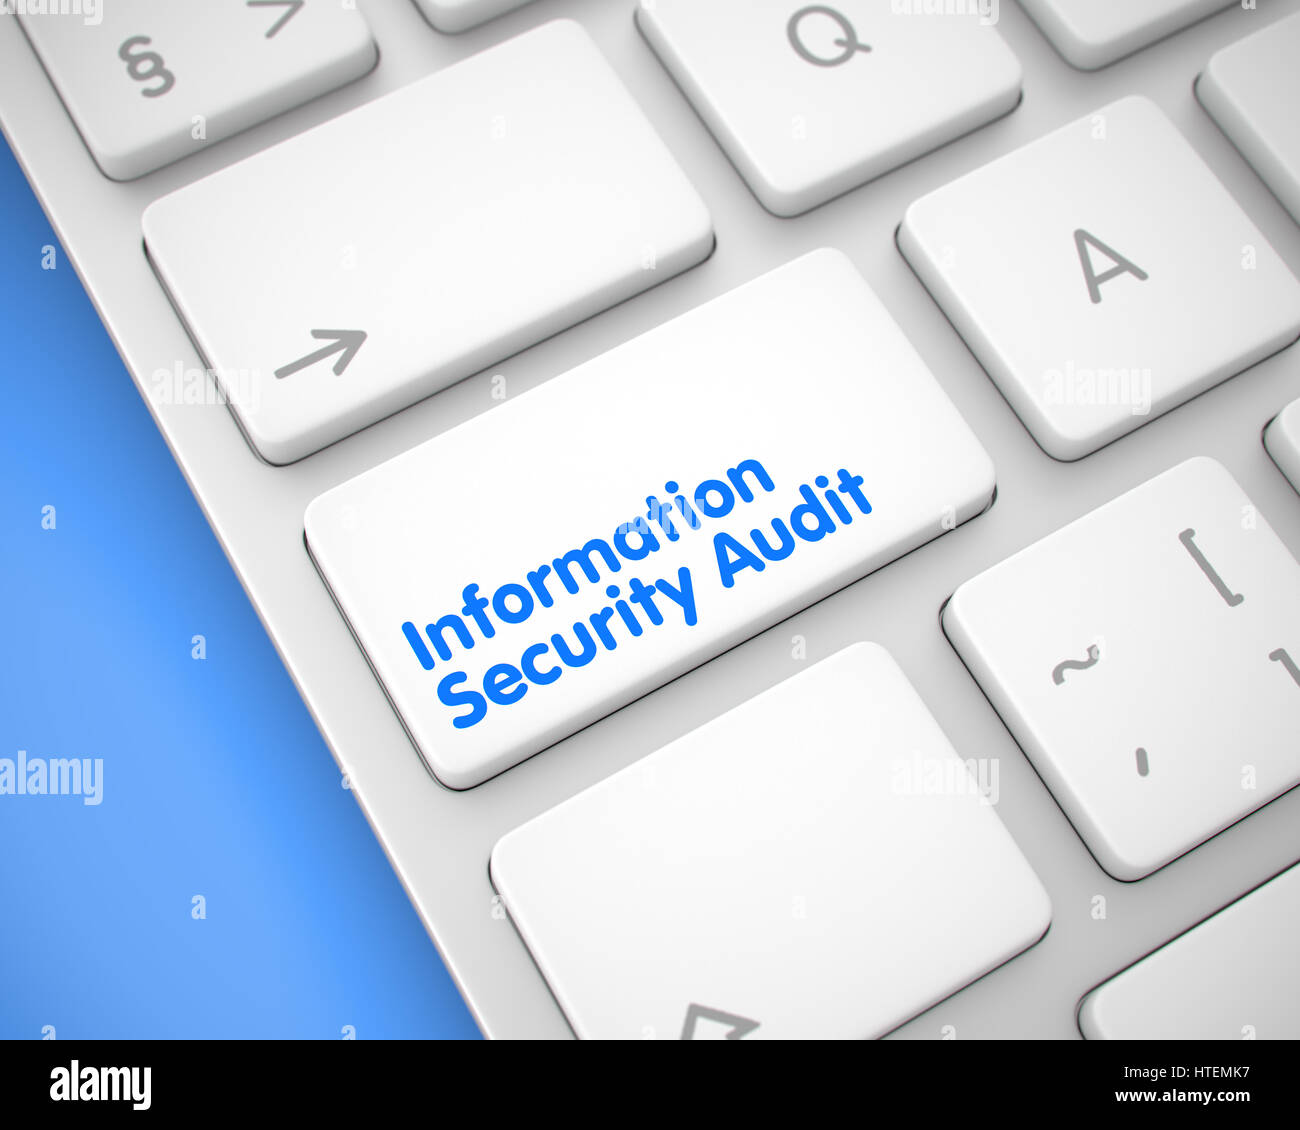 Online-Service-Konzept: Information Security Audit auf dem Laptop Tastatur Hintergrund. Nahaufnahme auf moderne Tastatur - Information Security Audit Wh Stockfoto